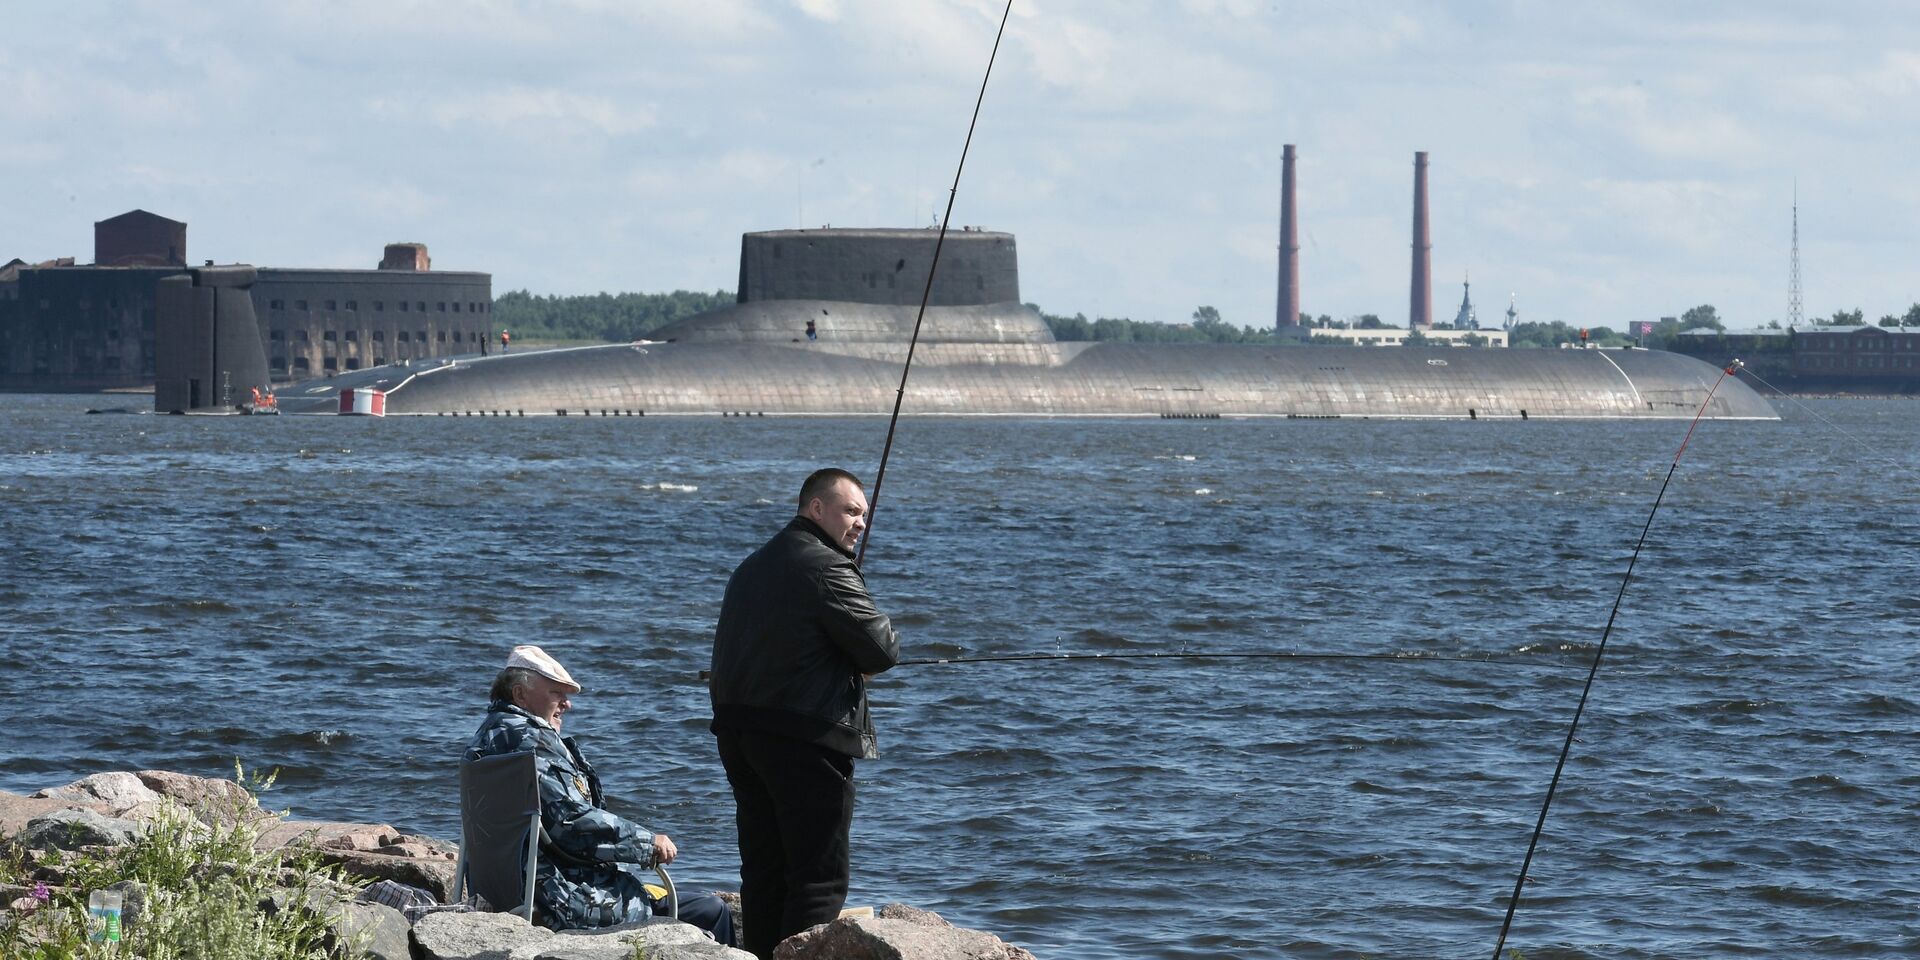 Подводная лодка Дмитрий Донской прибыла в Кронштадт, чтобы принять участие в параде в честь Дня ВМФ. 26 июля 2017 - ИноСМИ, 1920, 07.02.2023